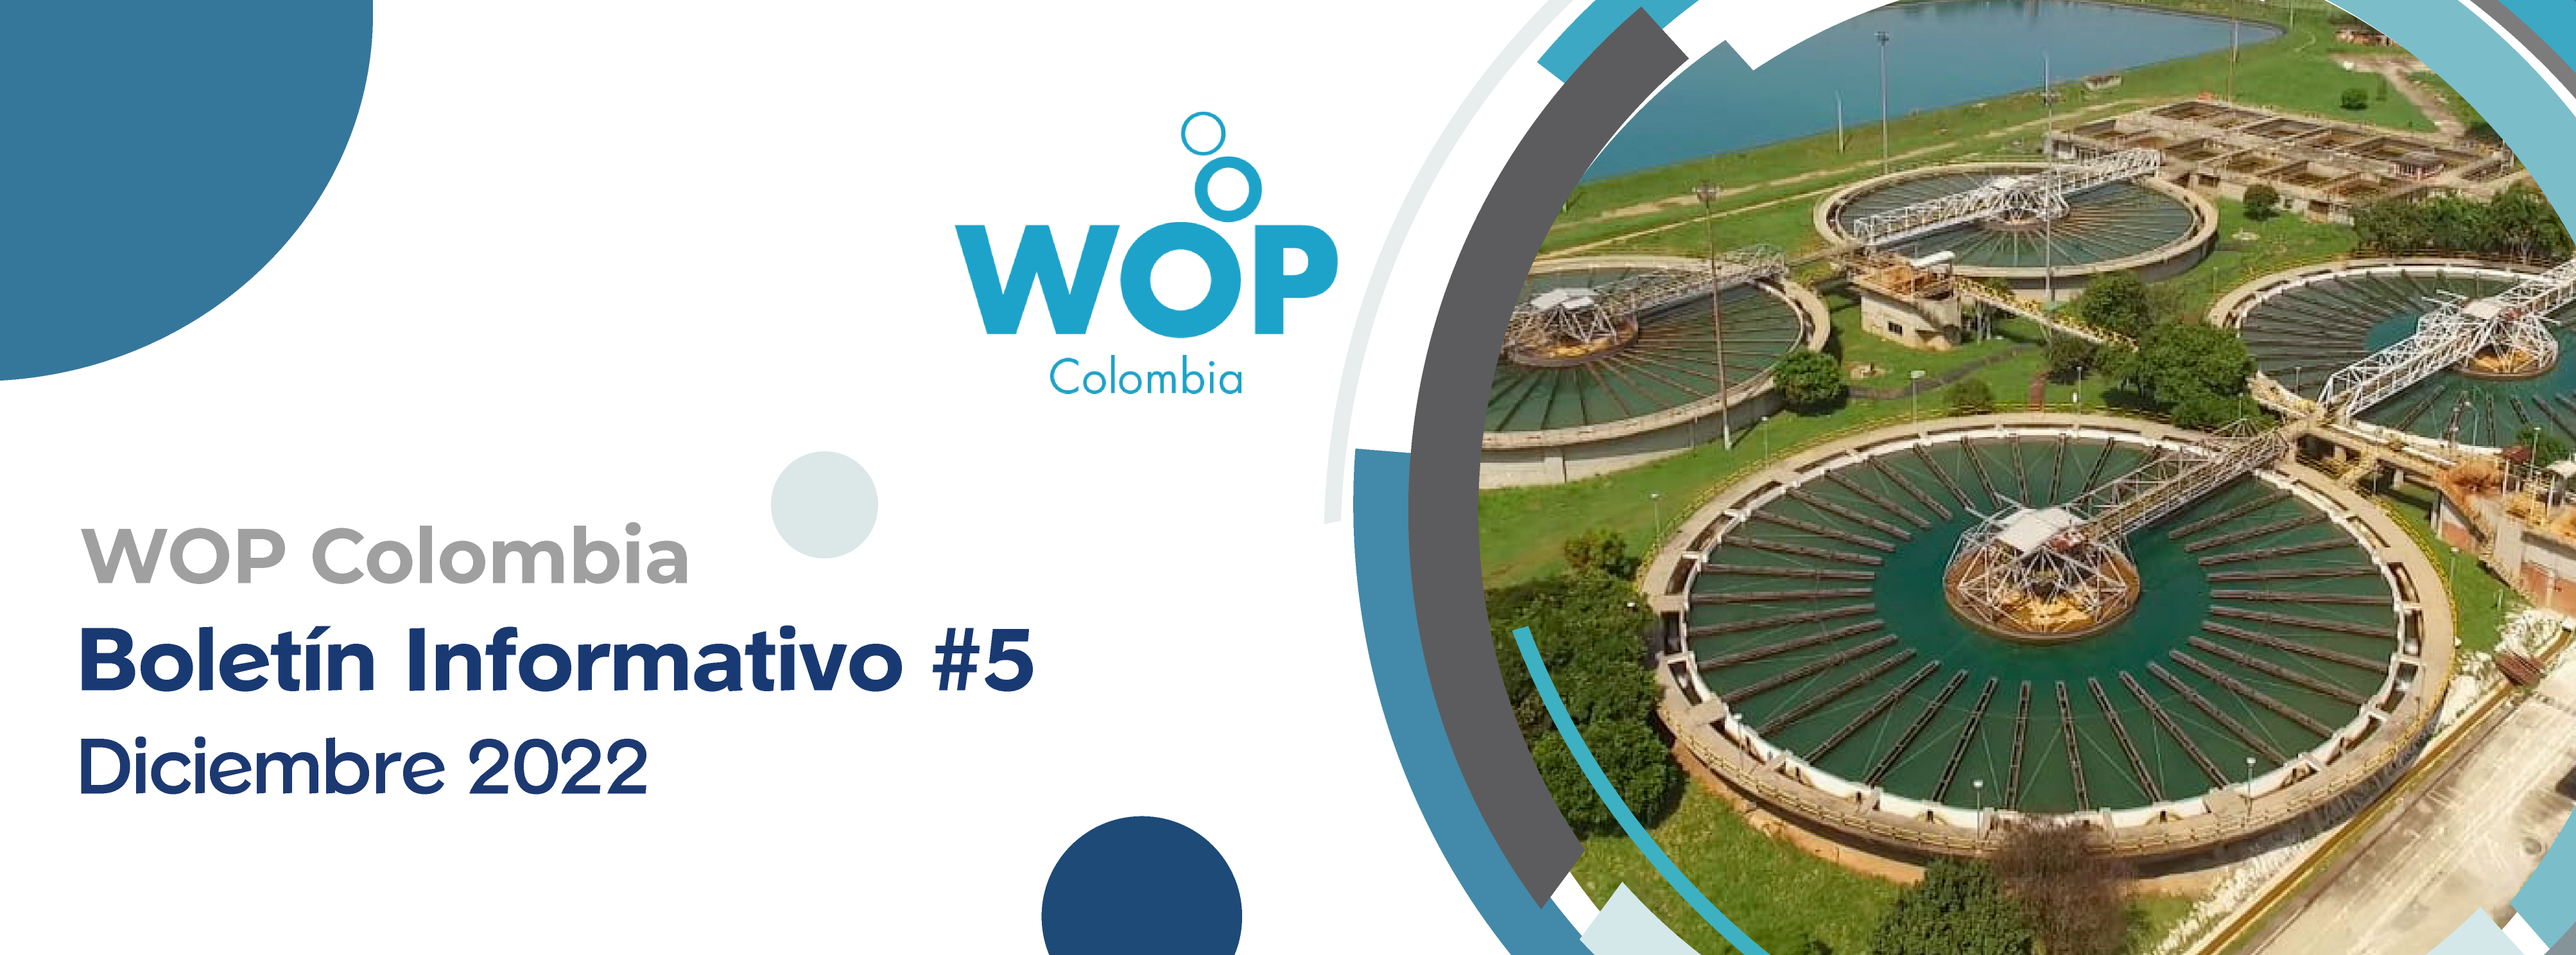 Boletín informativo n5 WOPCOLOMBIA